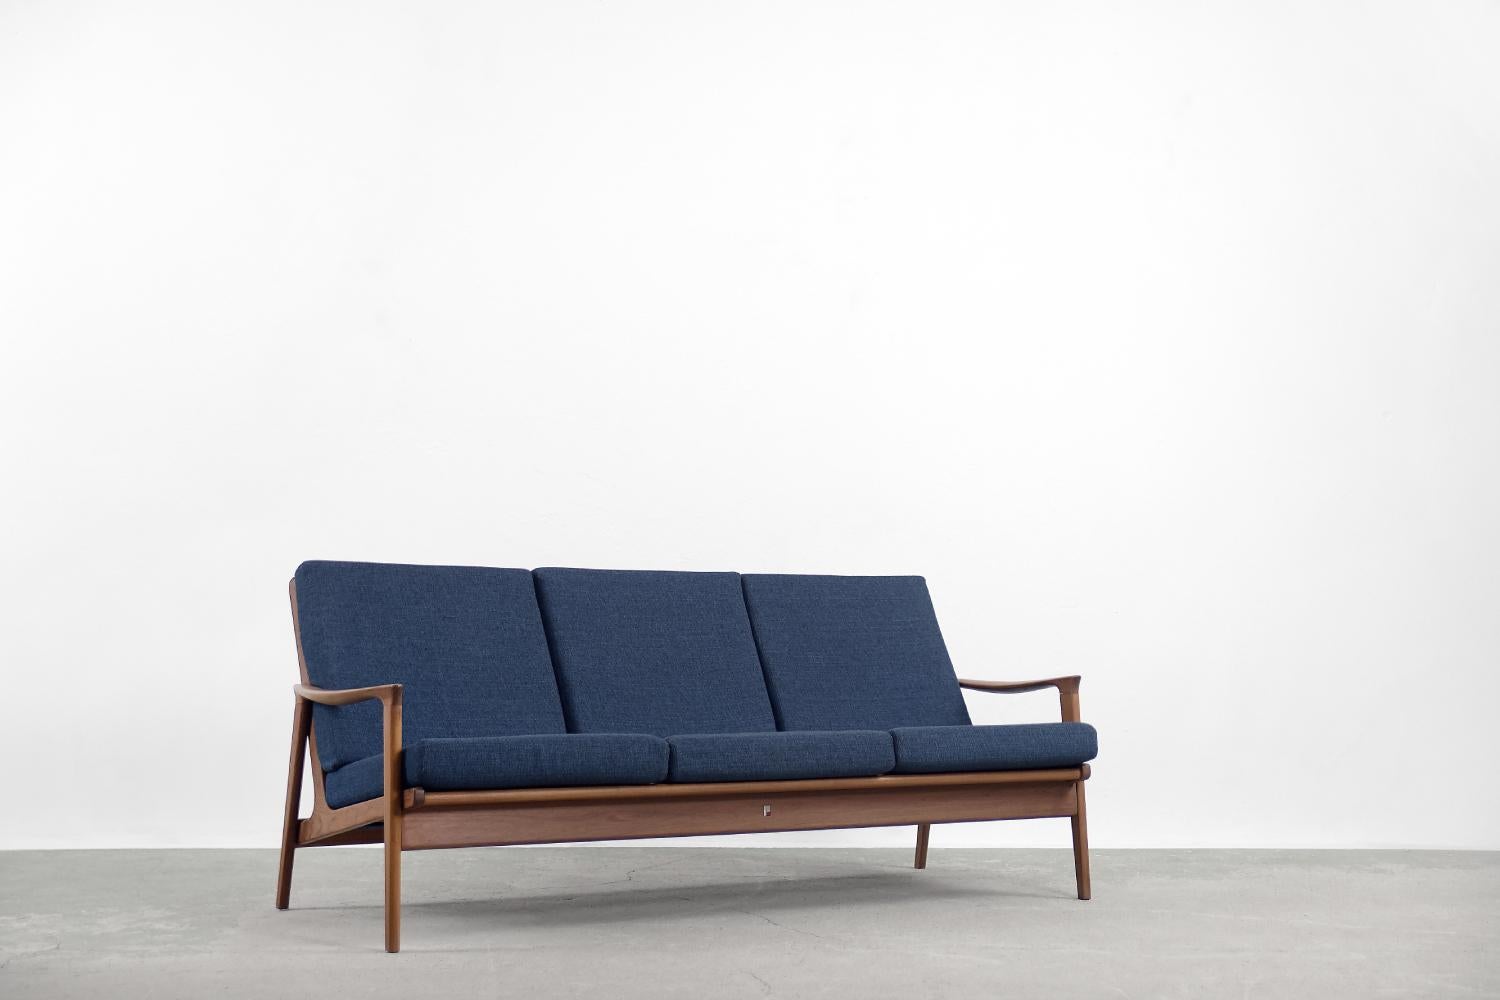 Cet impressionnant ensemble composé d'un canapé et de deux fauteuils a été conçu et produit par la société australienne Parker Furniture en 1956. Parker a une longue tradition de création de certains des meilleurs meubles du milieu du siècle. Ces